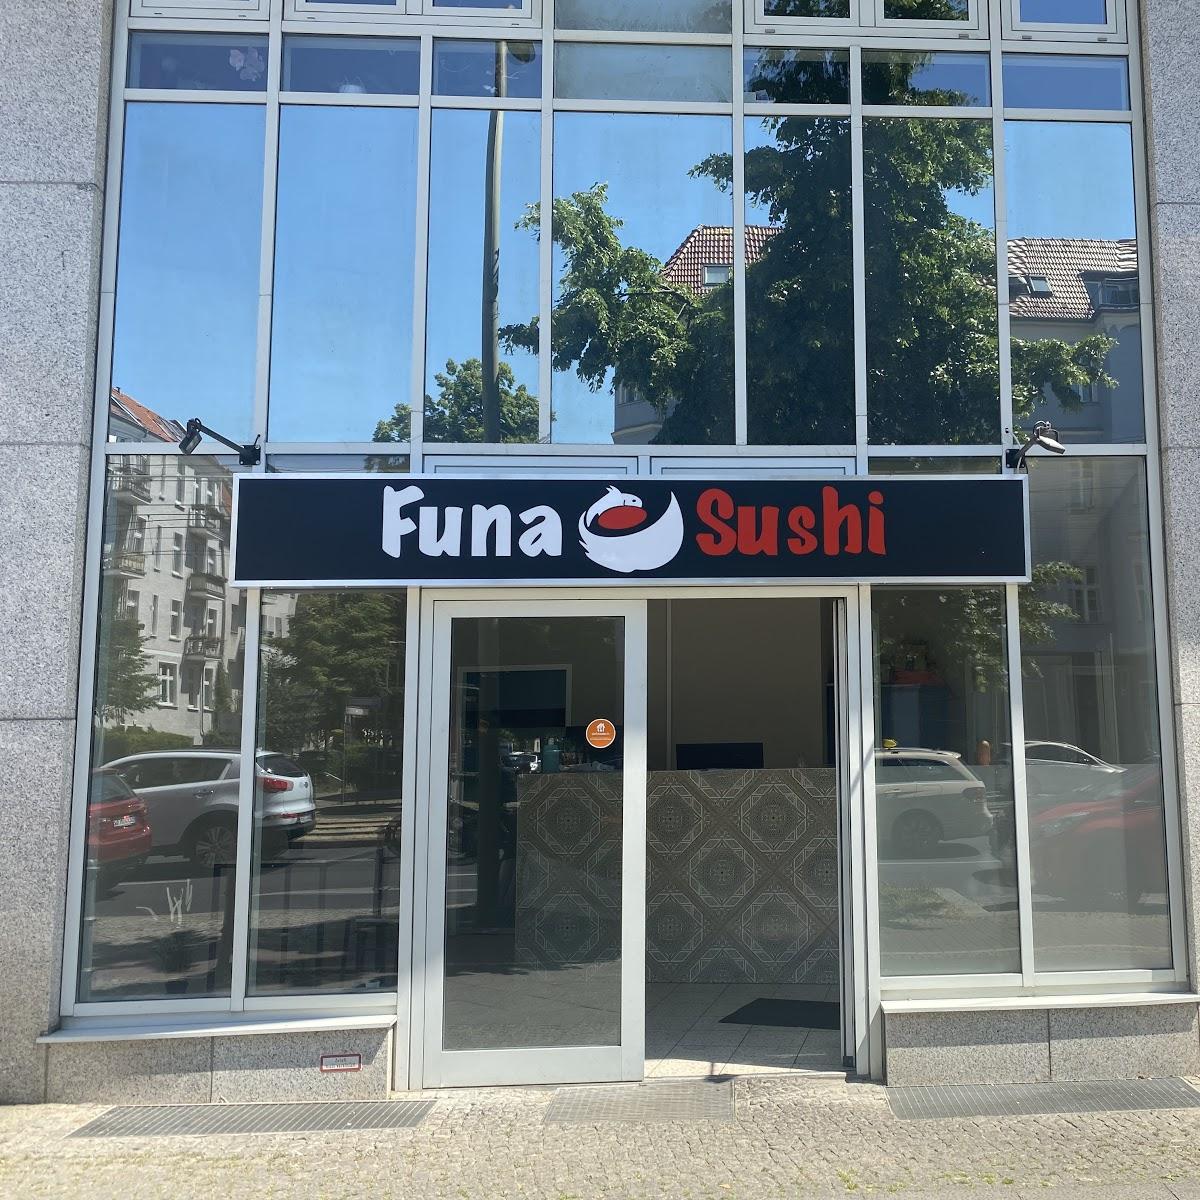 Restaurant "Funa Sushi - Weisensee" in Berlin